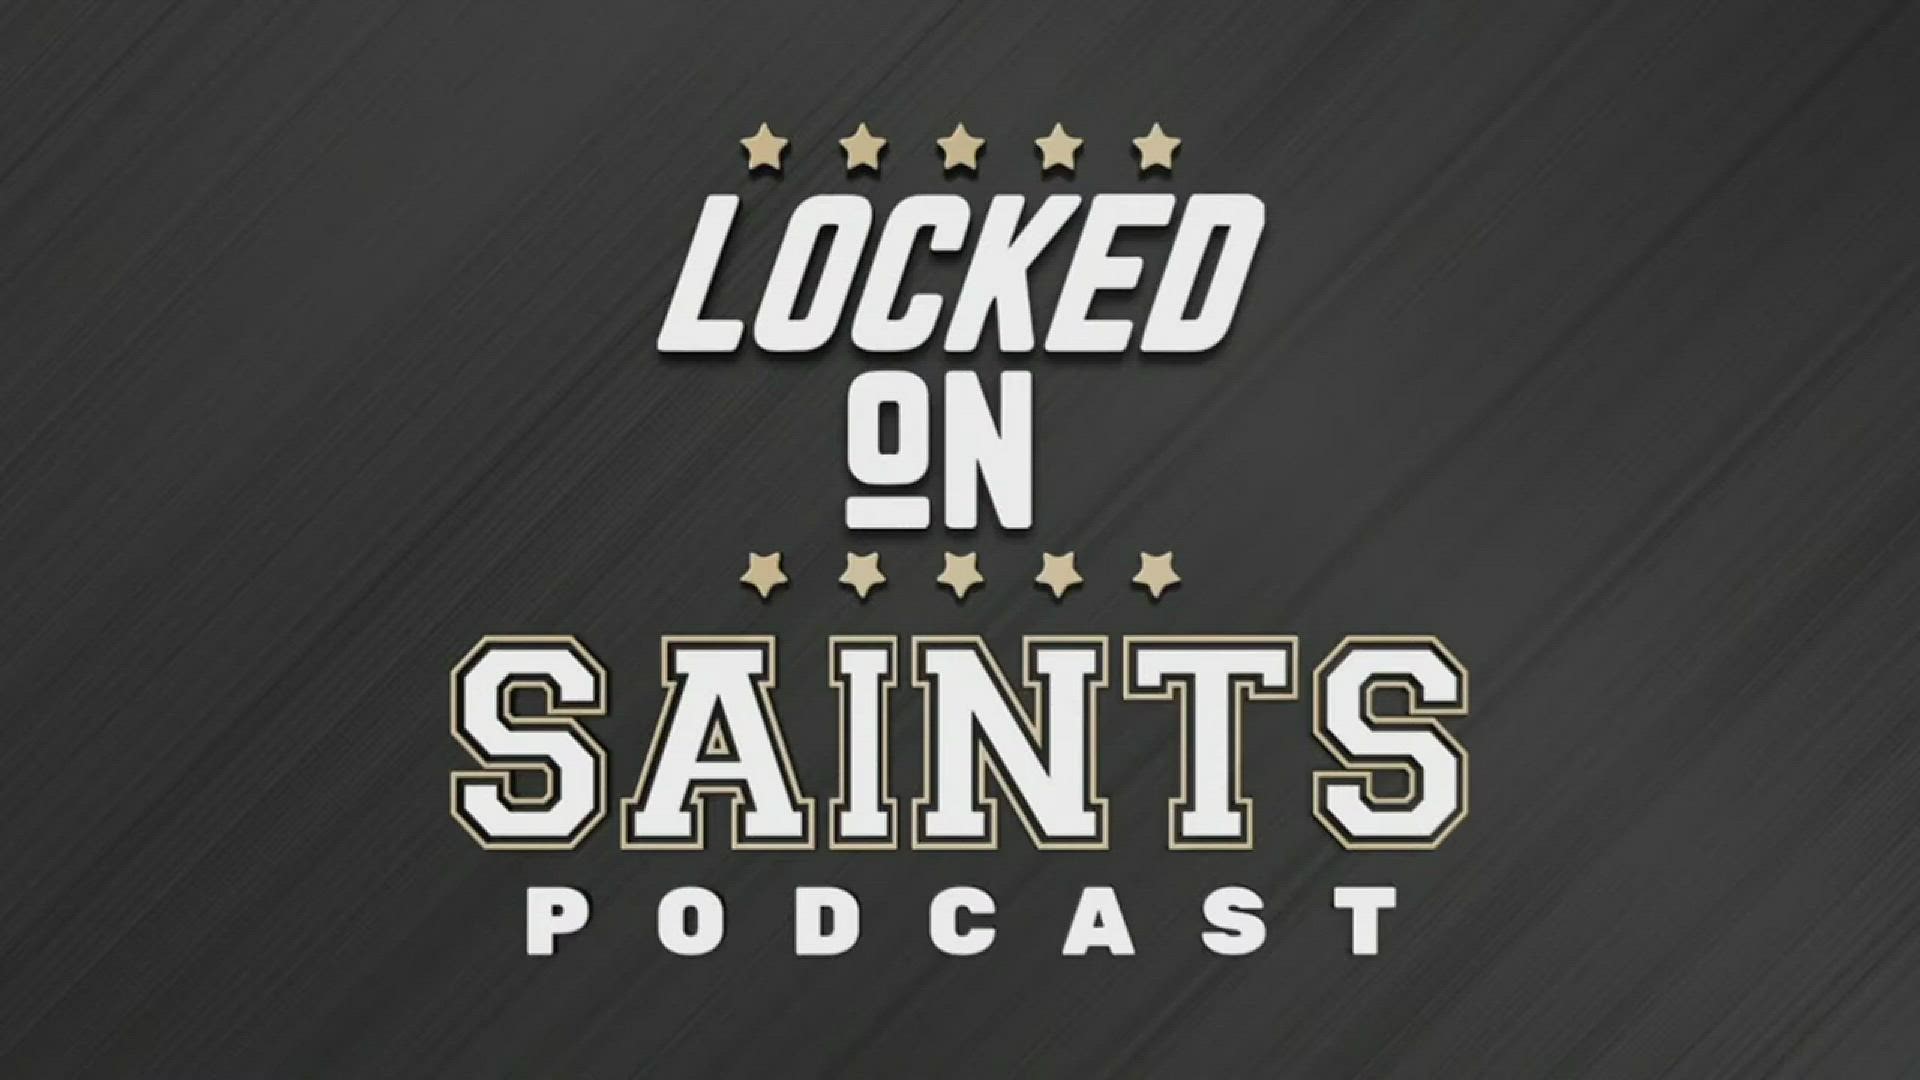 Saints Lock of Weekend vs Texans